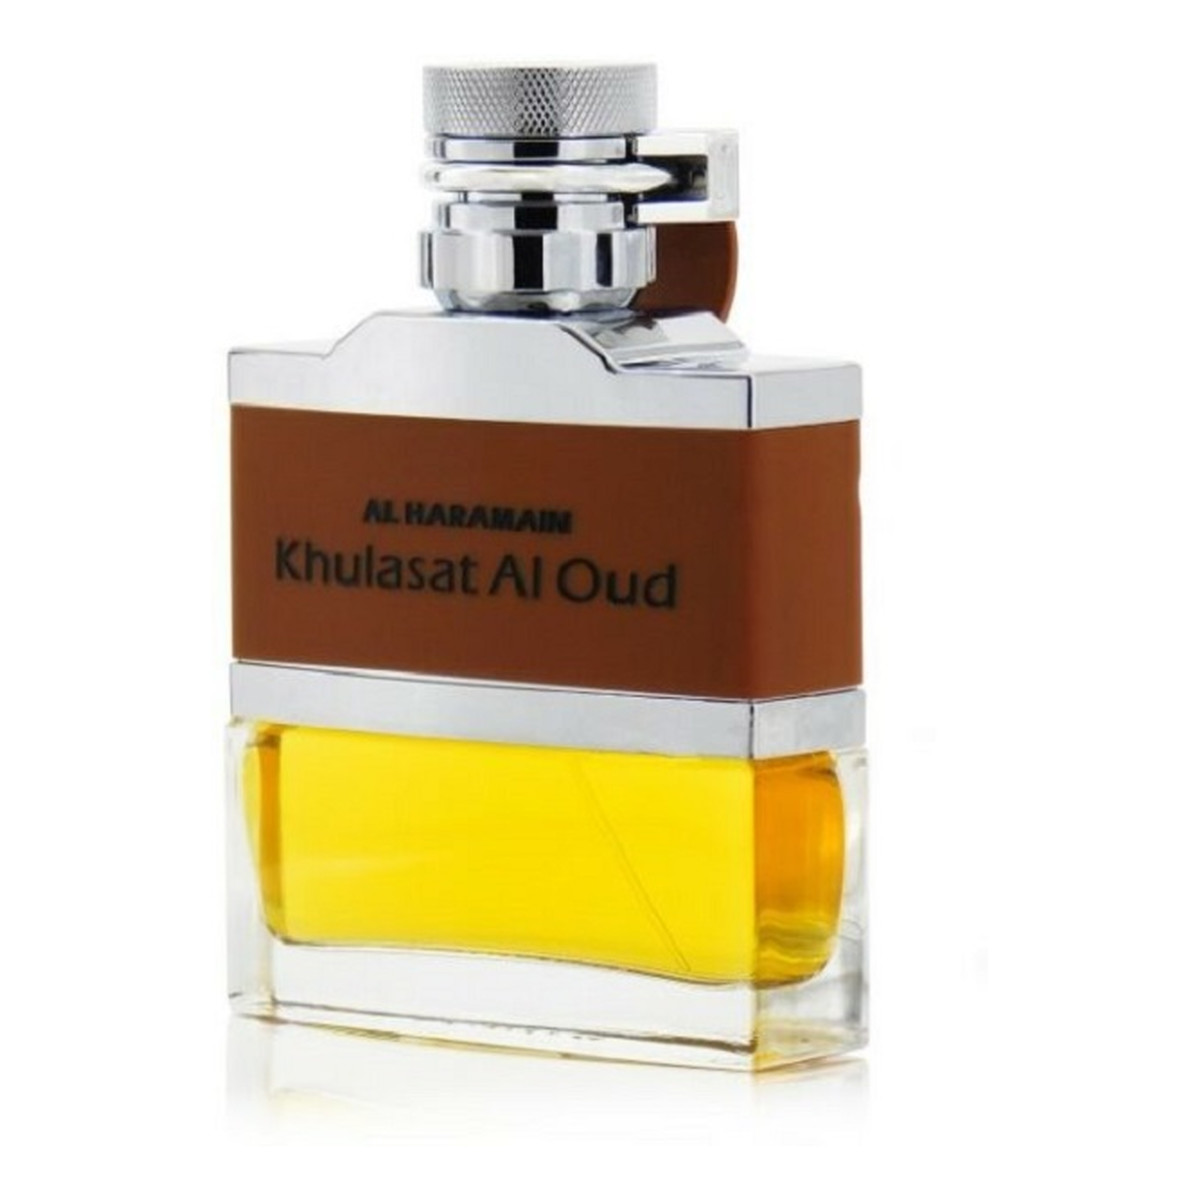 Al Haramain Khulasat Al Oud For Men Woda perfumowana spray 100ml